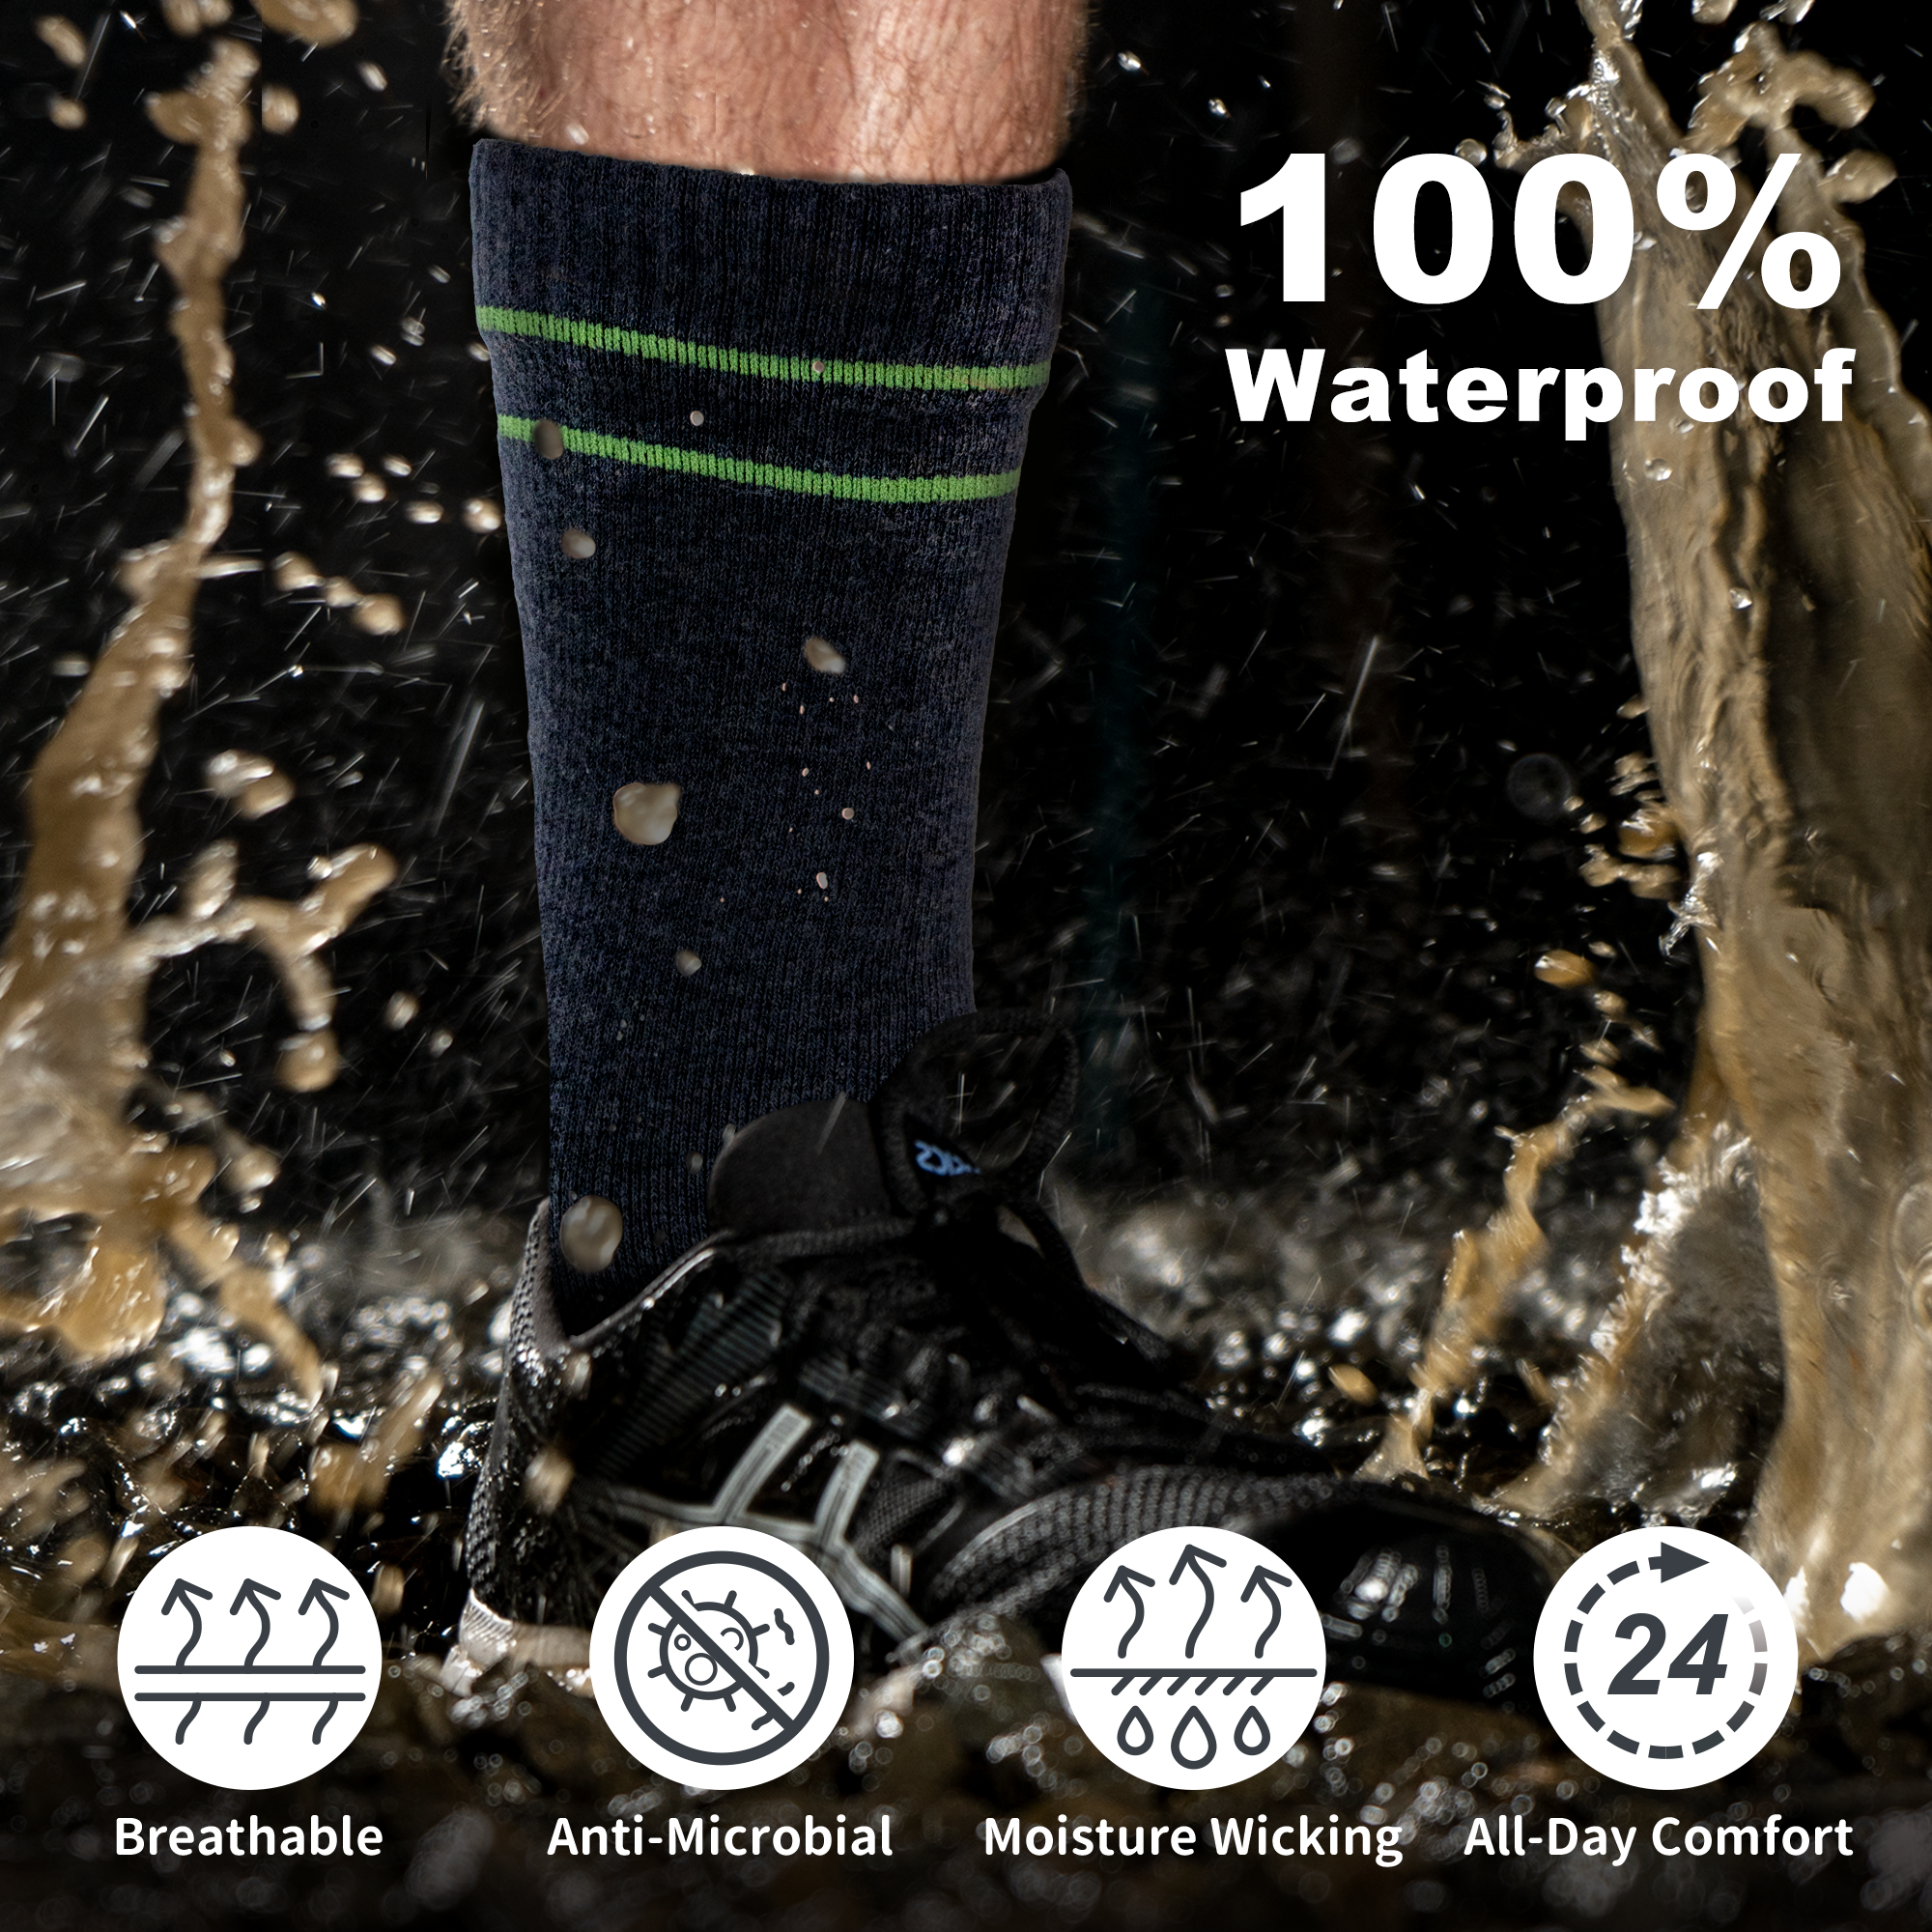 MOUNTAIN Waterproof Socks